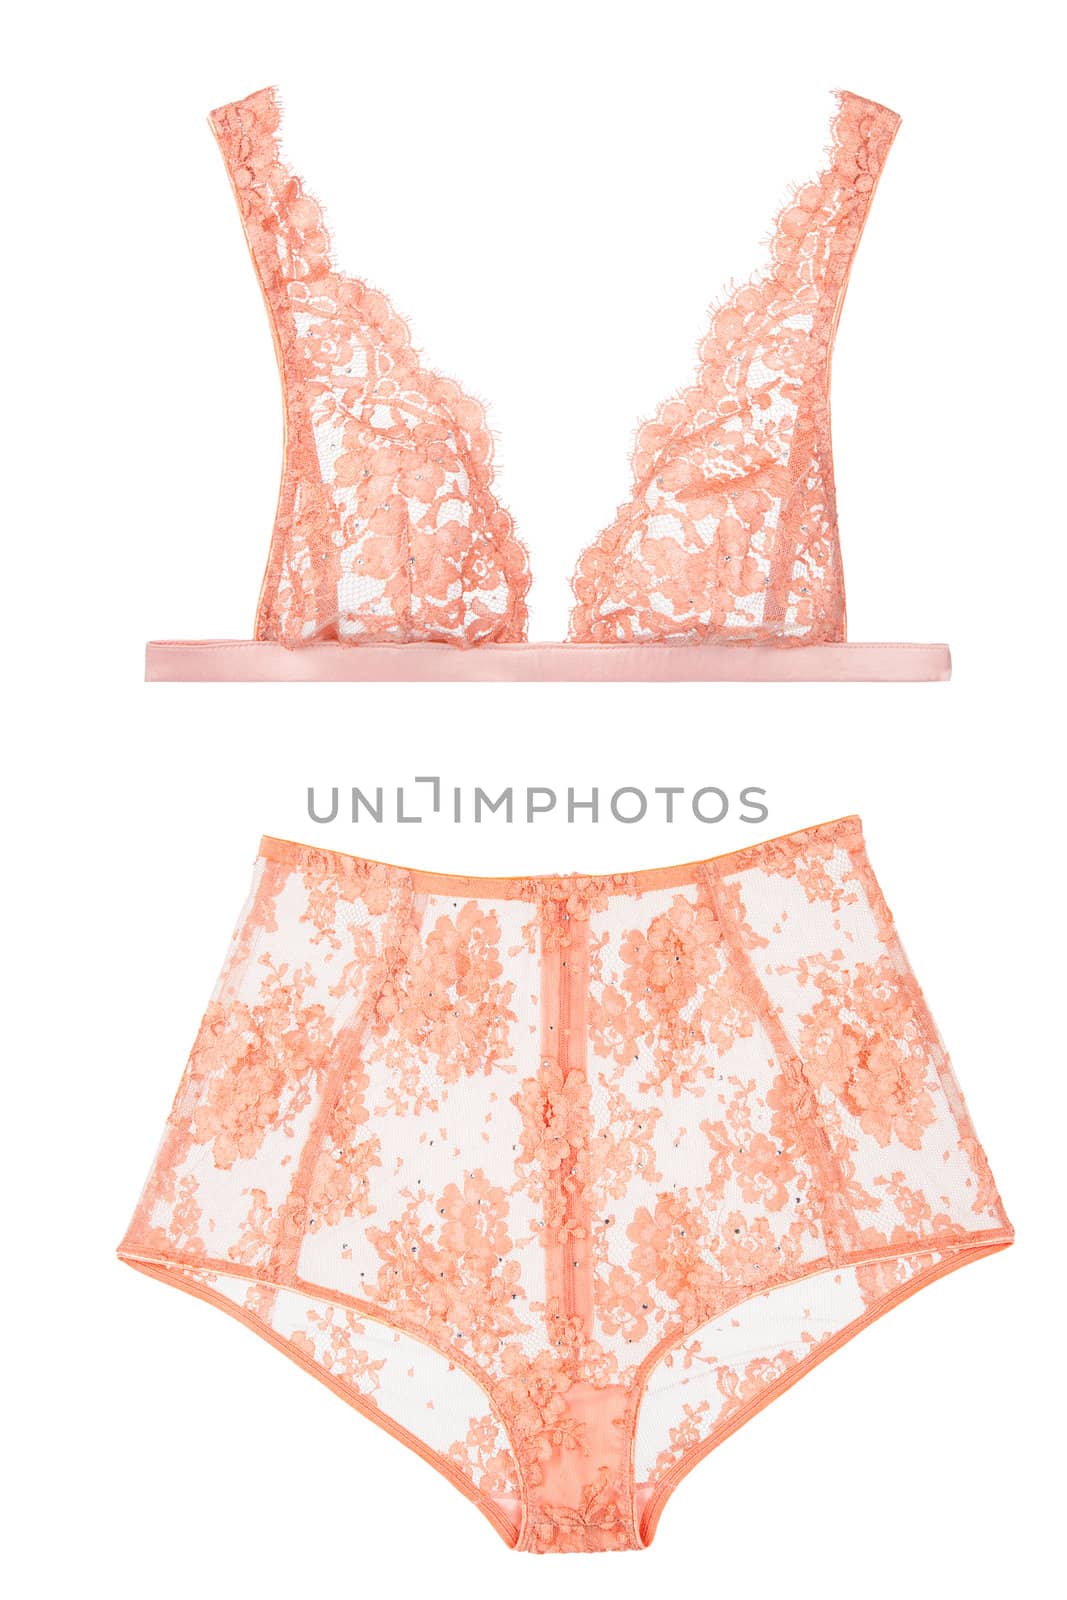 orange bra and panties, woman lingerie by VictorO